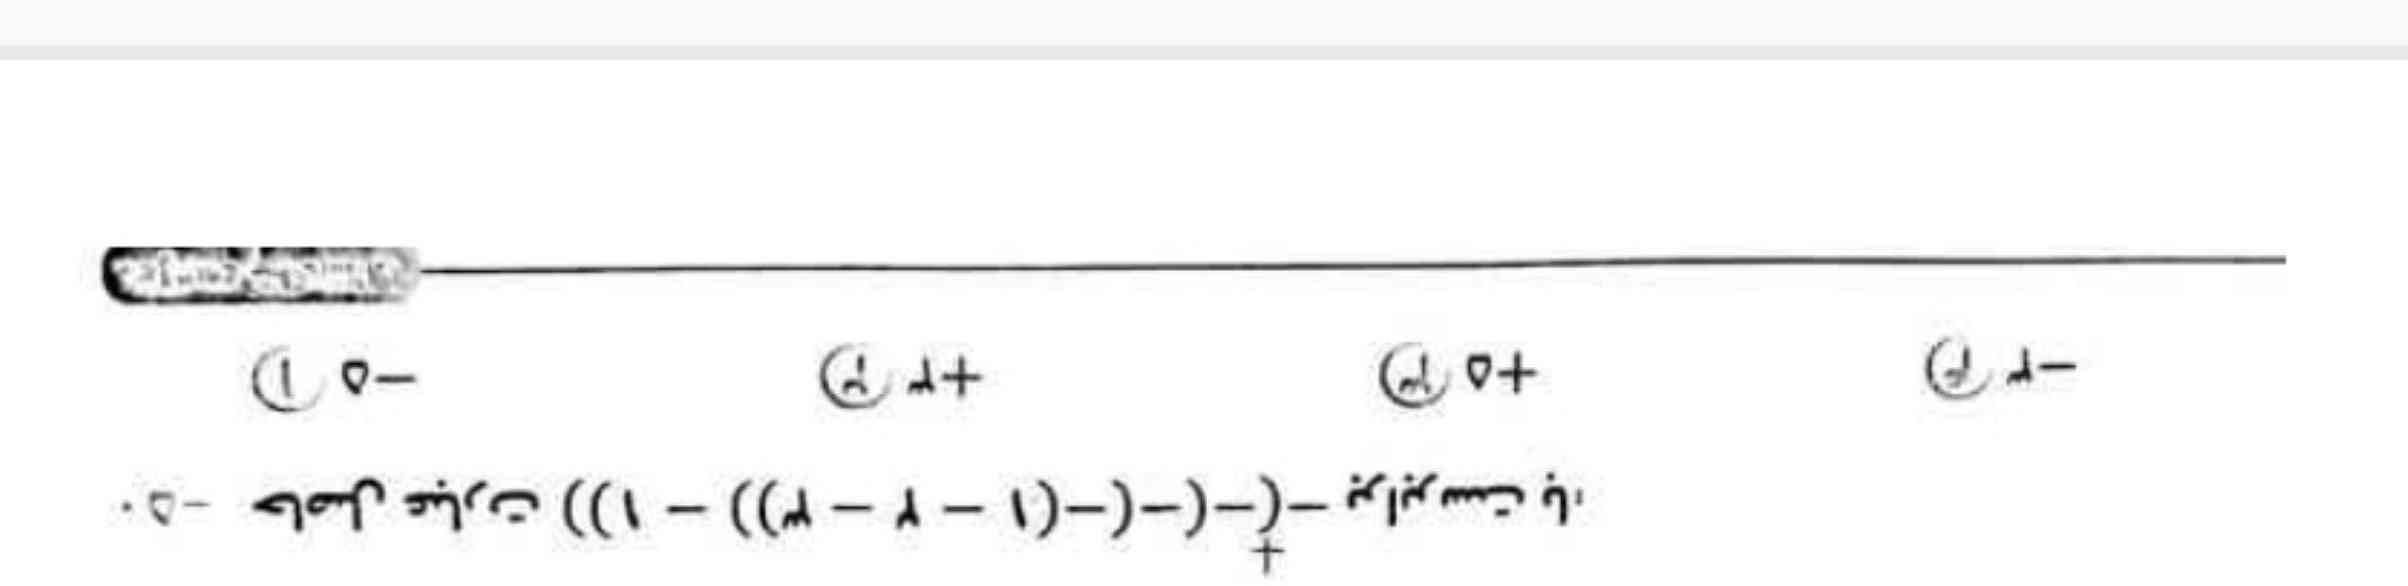 جواب این معادله کدام گزینه میشه؟